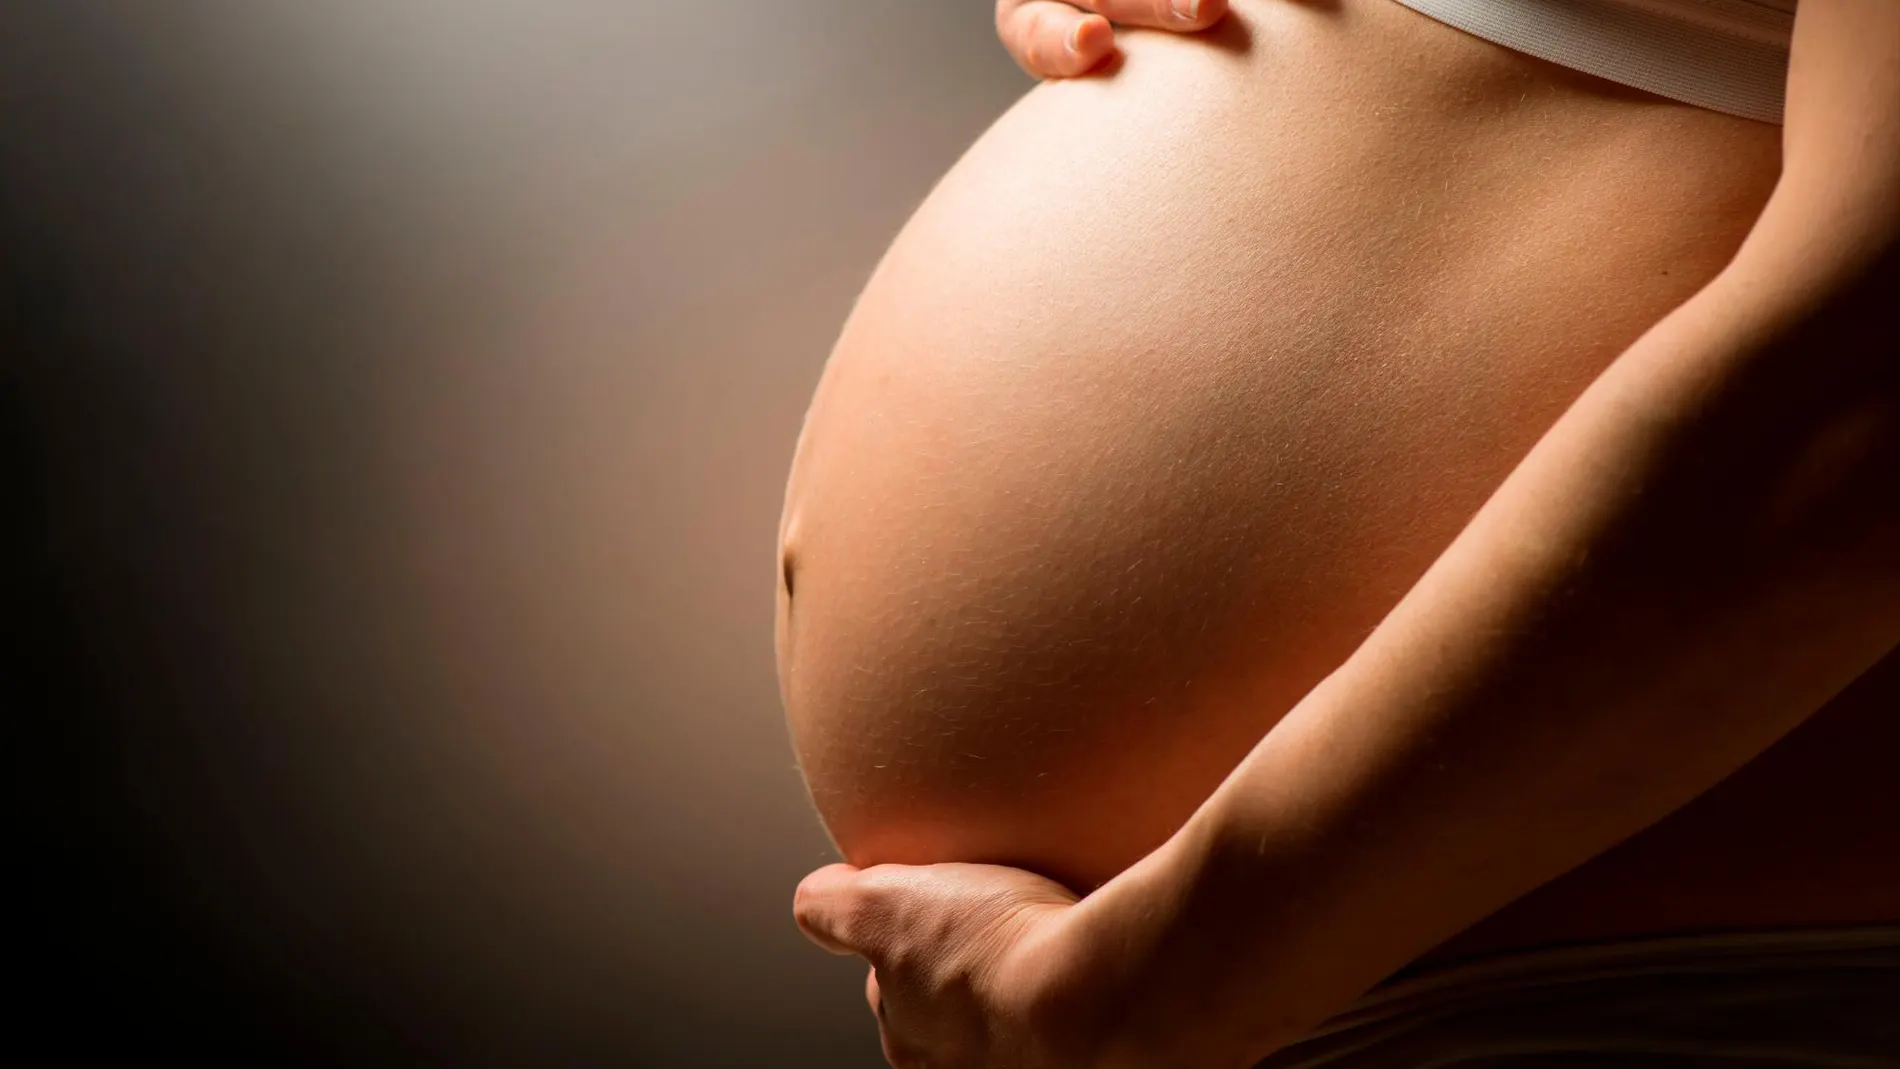 Una juez obliga a practicar una cesárea a una mujer para salvar al bebé